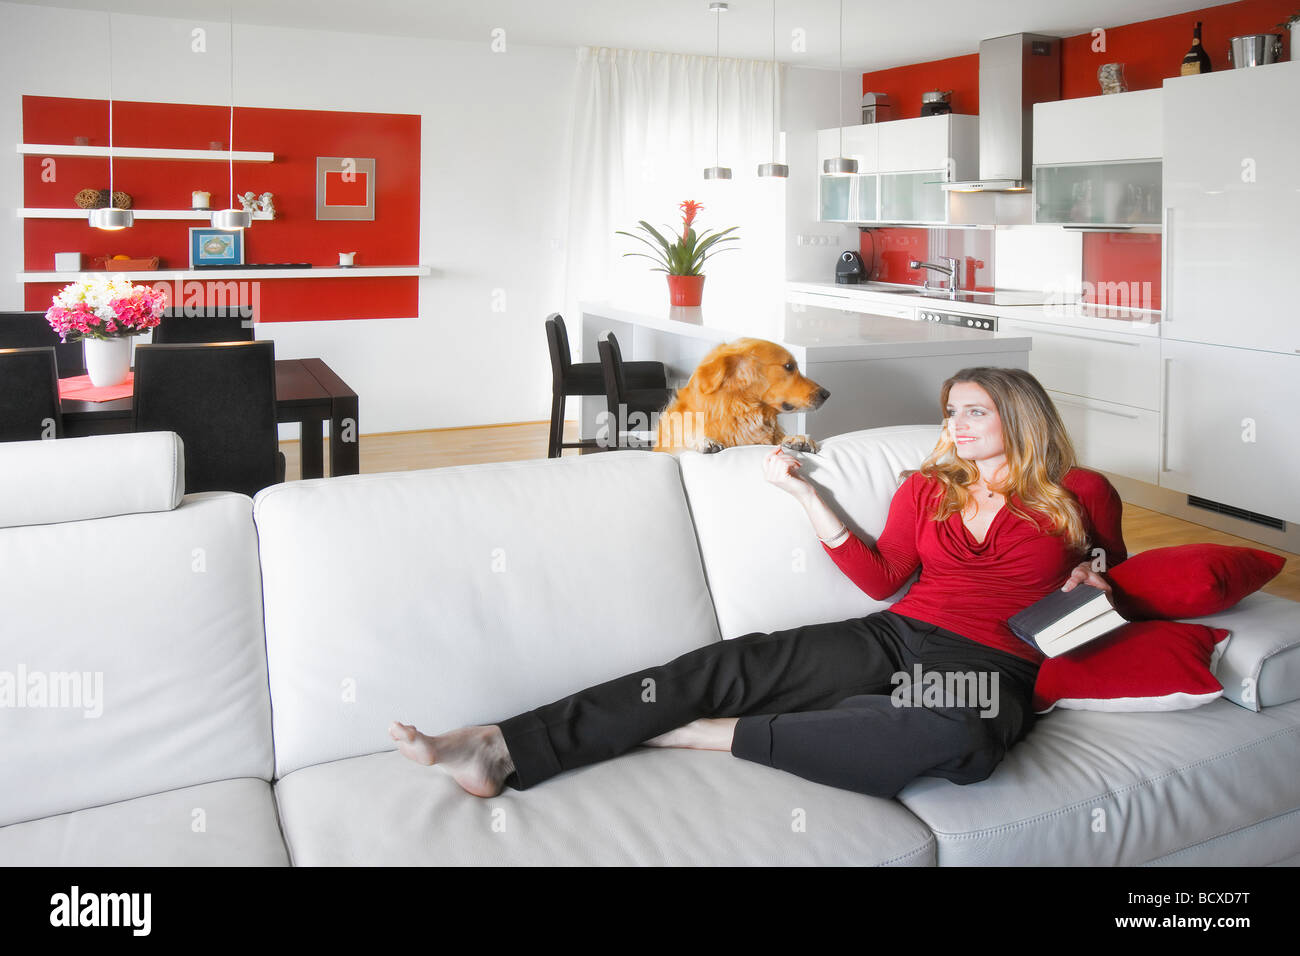 junge schöne Frau sitzen auf Soffa in modernen Küche Interieur Stockfoto